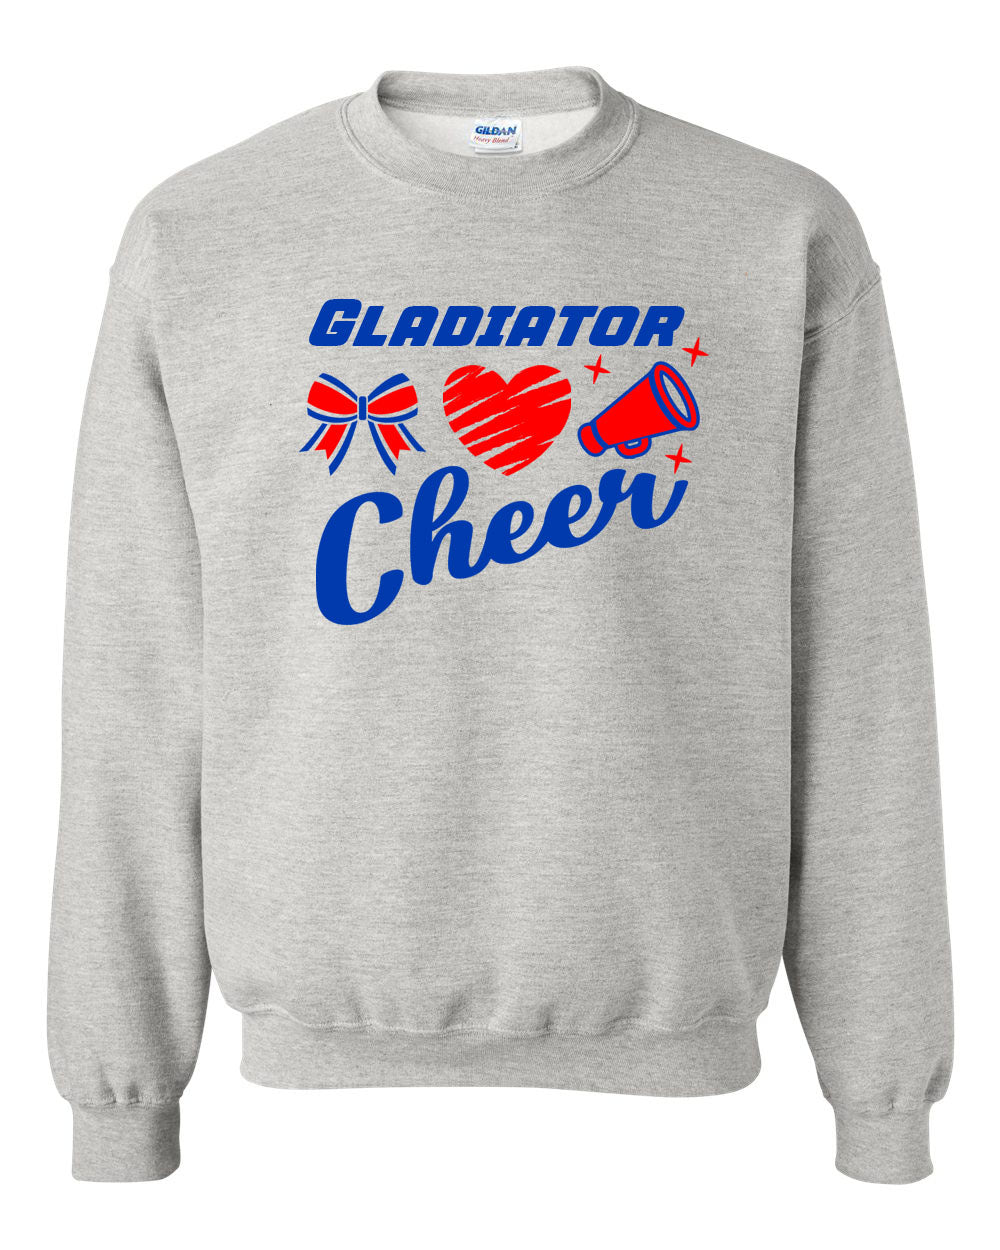 Goshen Cheer Design 9 non hooded sweatshirt